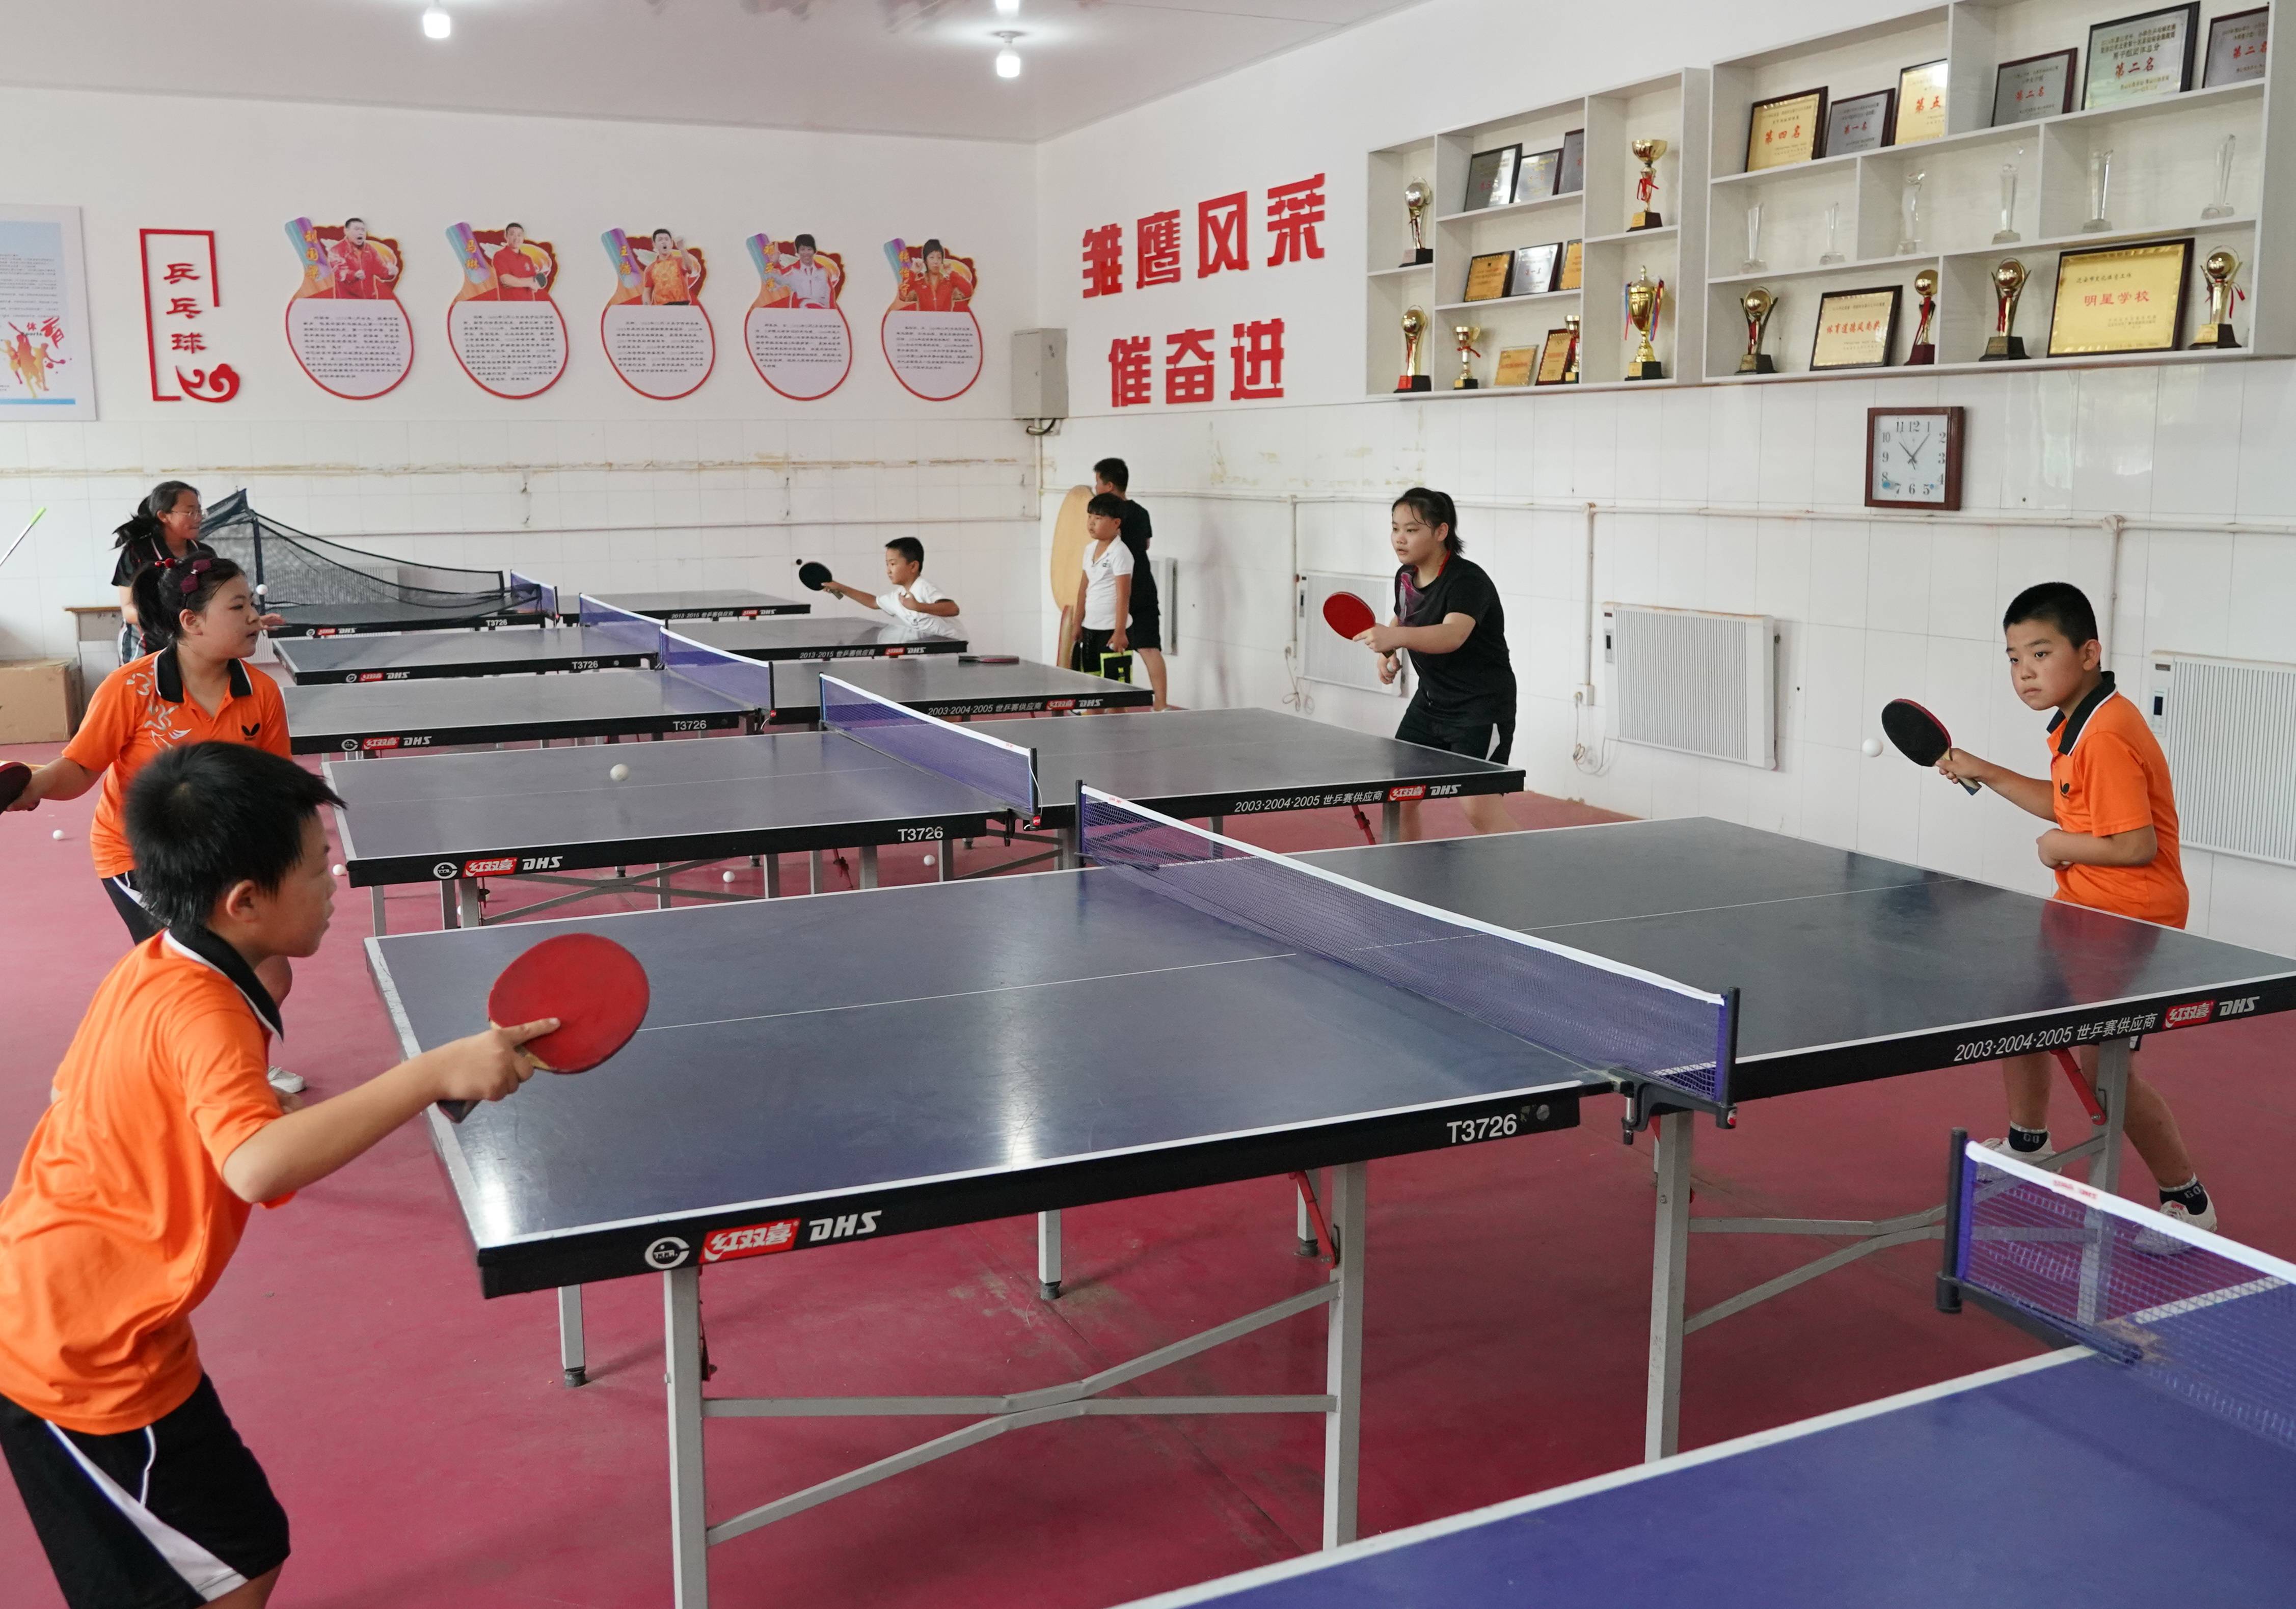 7月29日,迁安市彭店子乡八家寨完全小学乒乓球训练队队员在训练中.